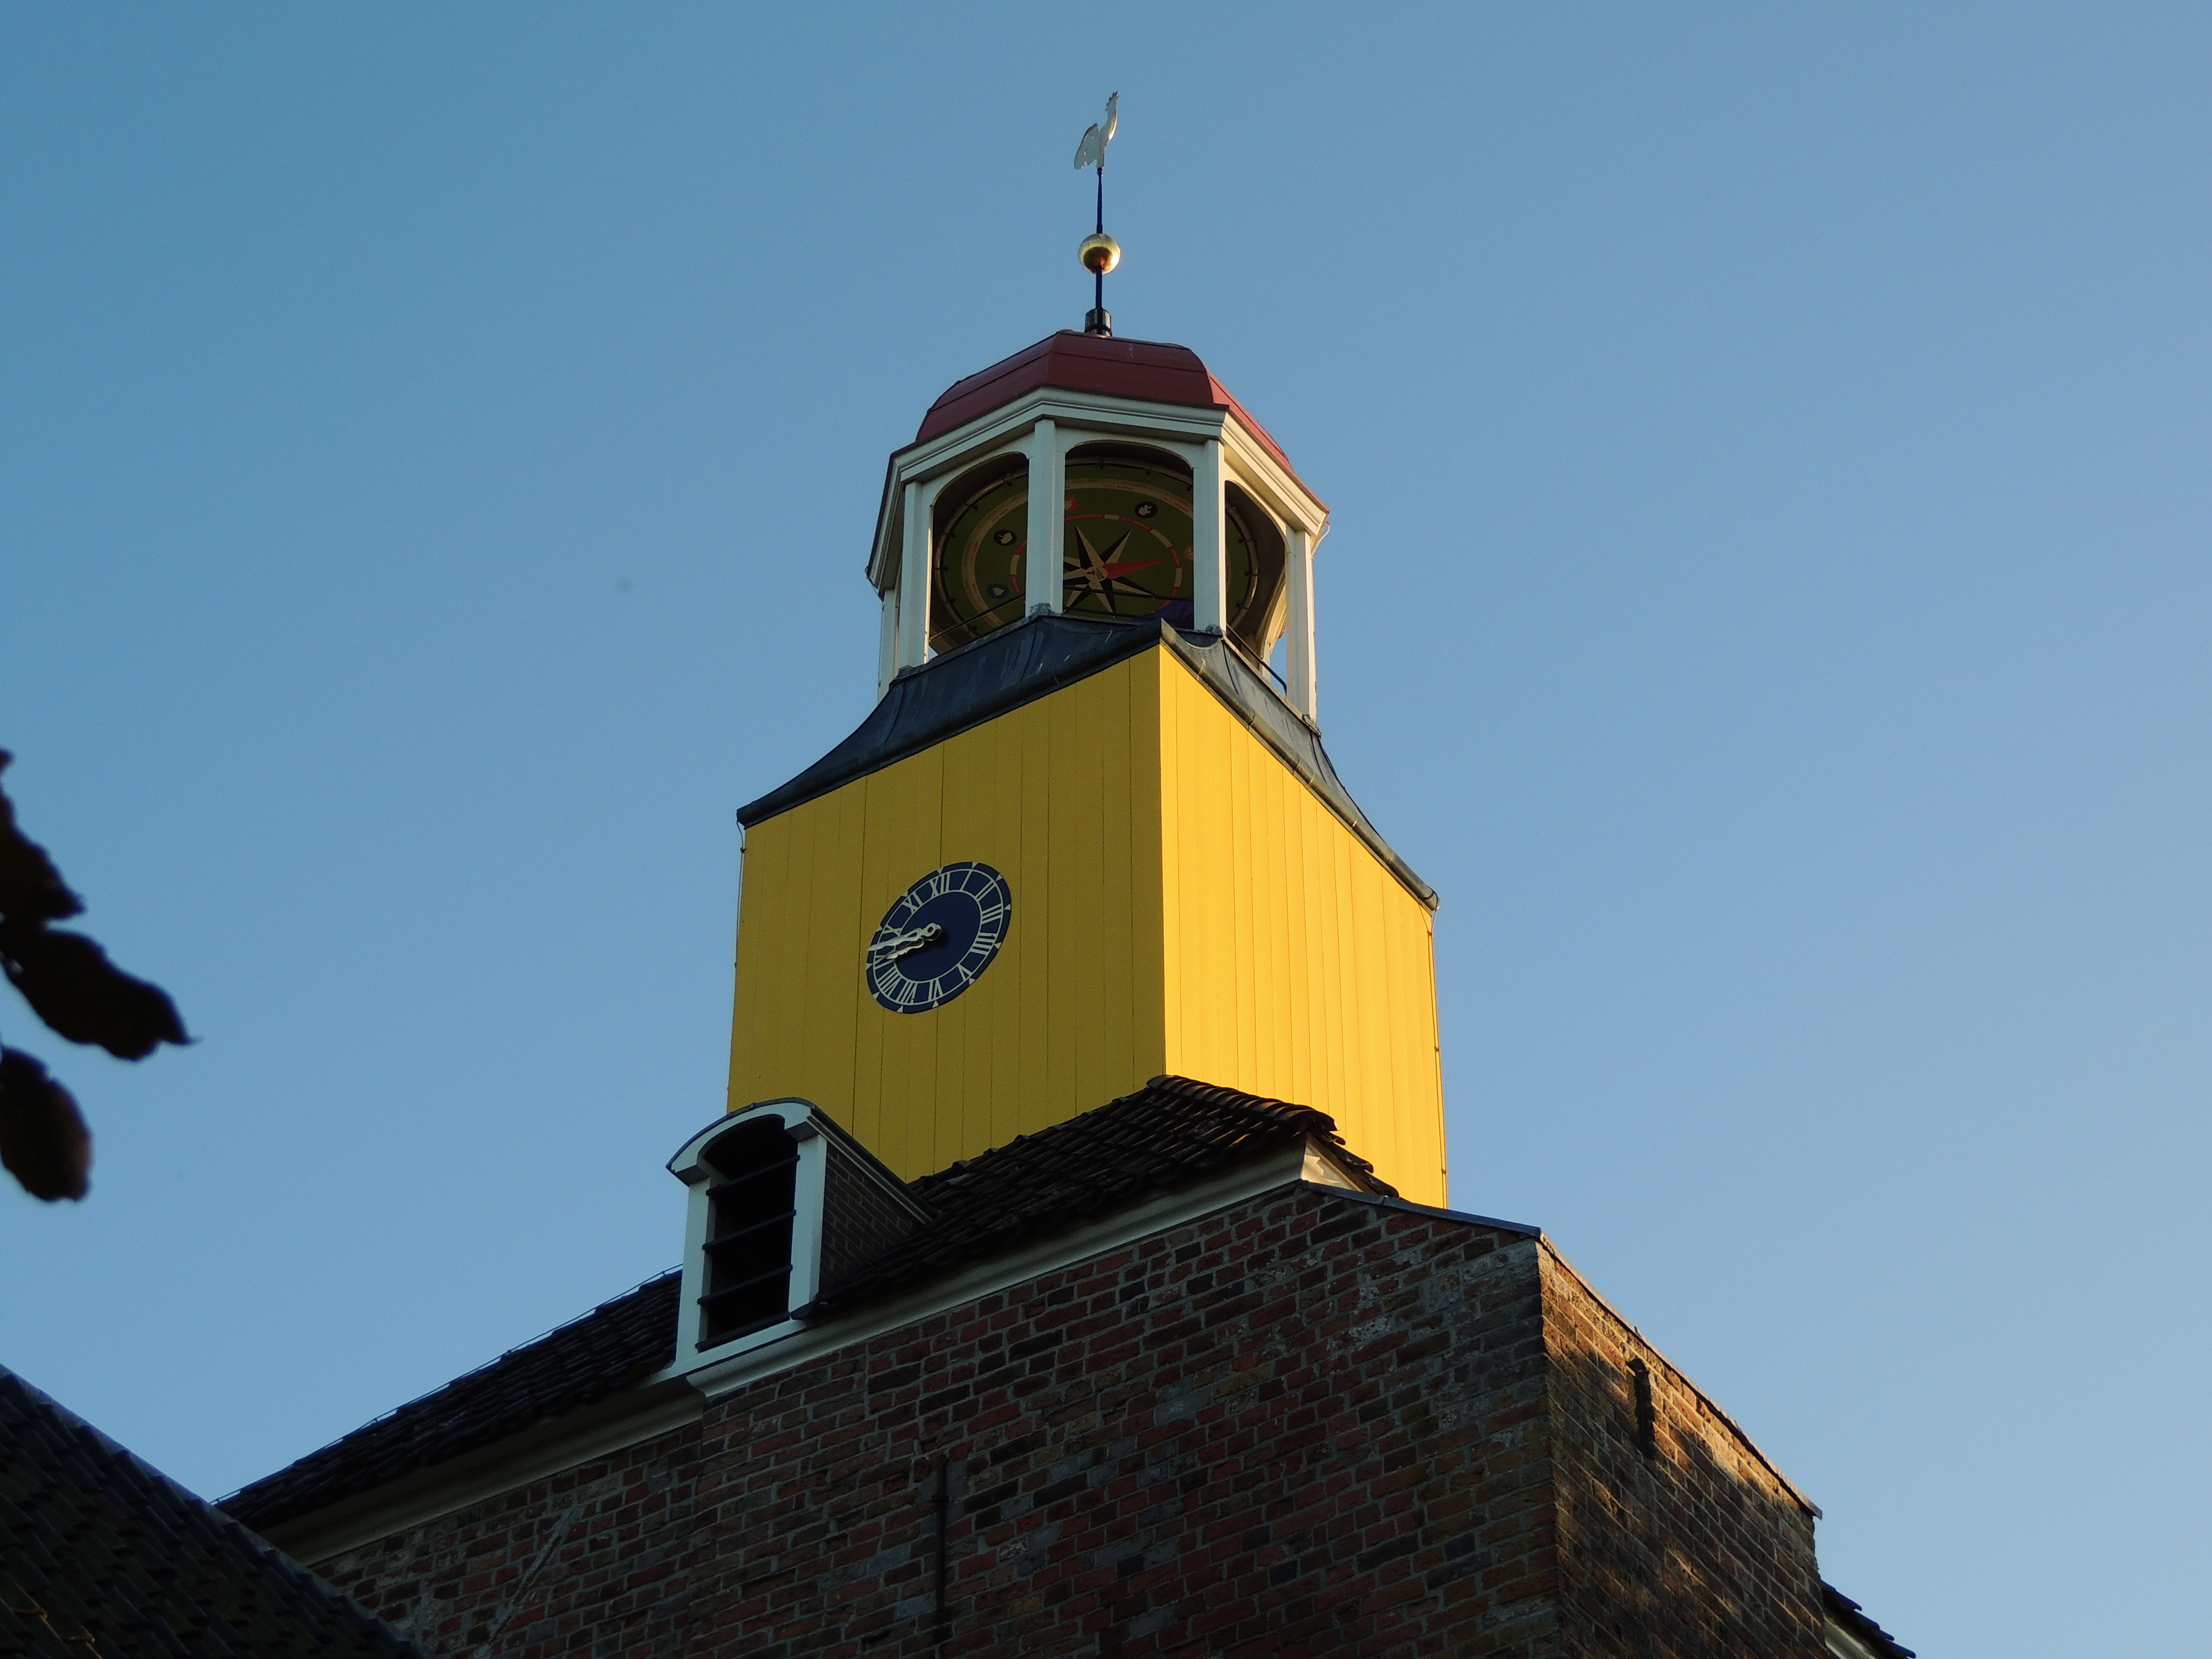 De koepelvormige lantaarntoren van de kerk is een baken voor de scheepvaart op de Waddenzee. Kenmerkend zijn de gebruikte kleuren aan deze torenspits, fel geel en rood, met bovenin een windroos.